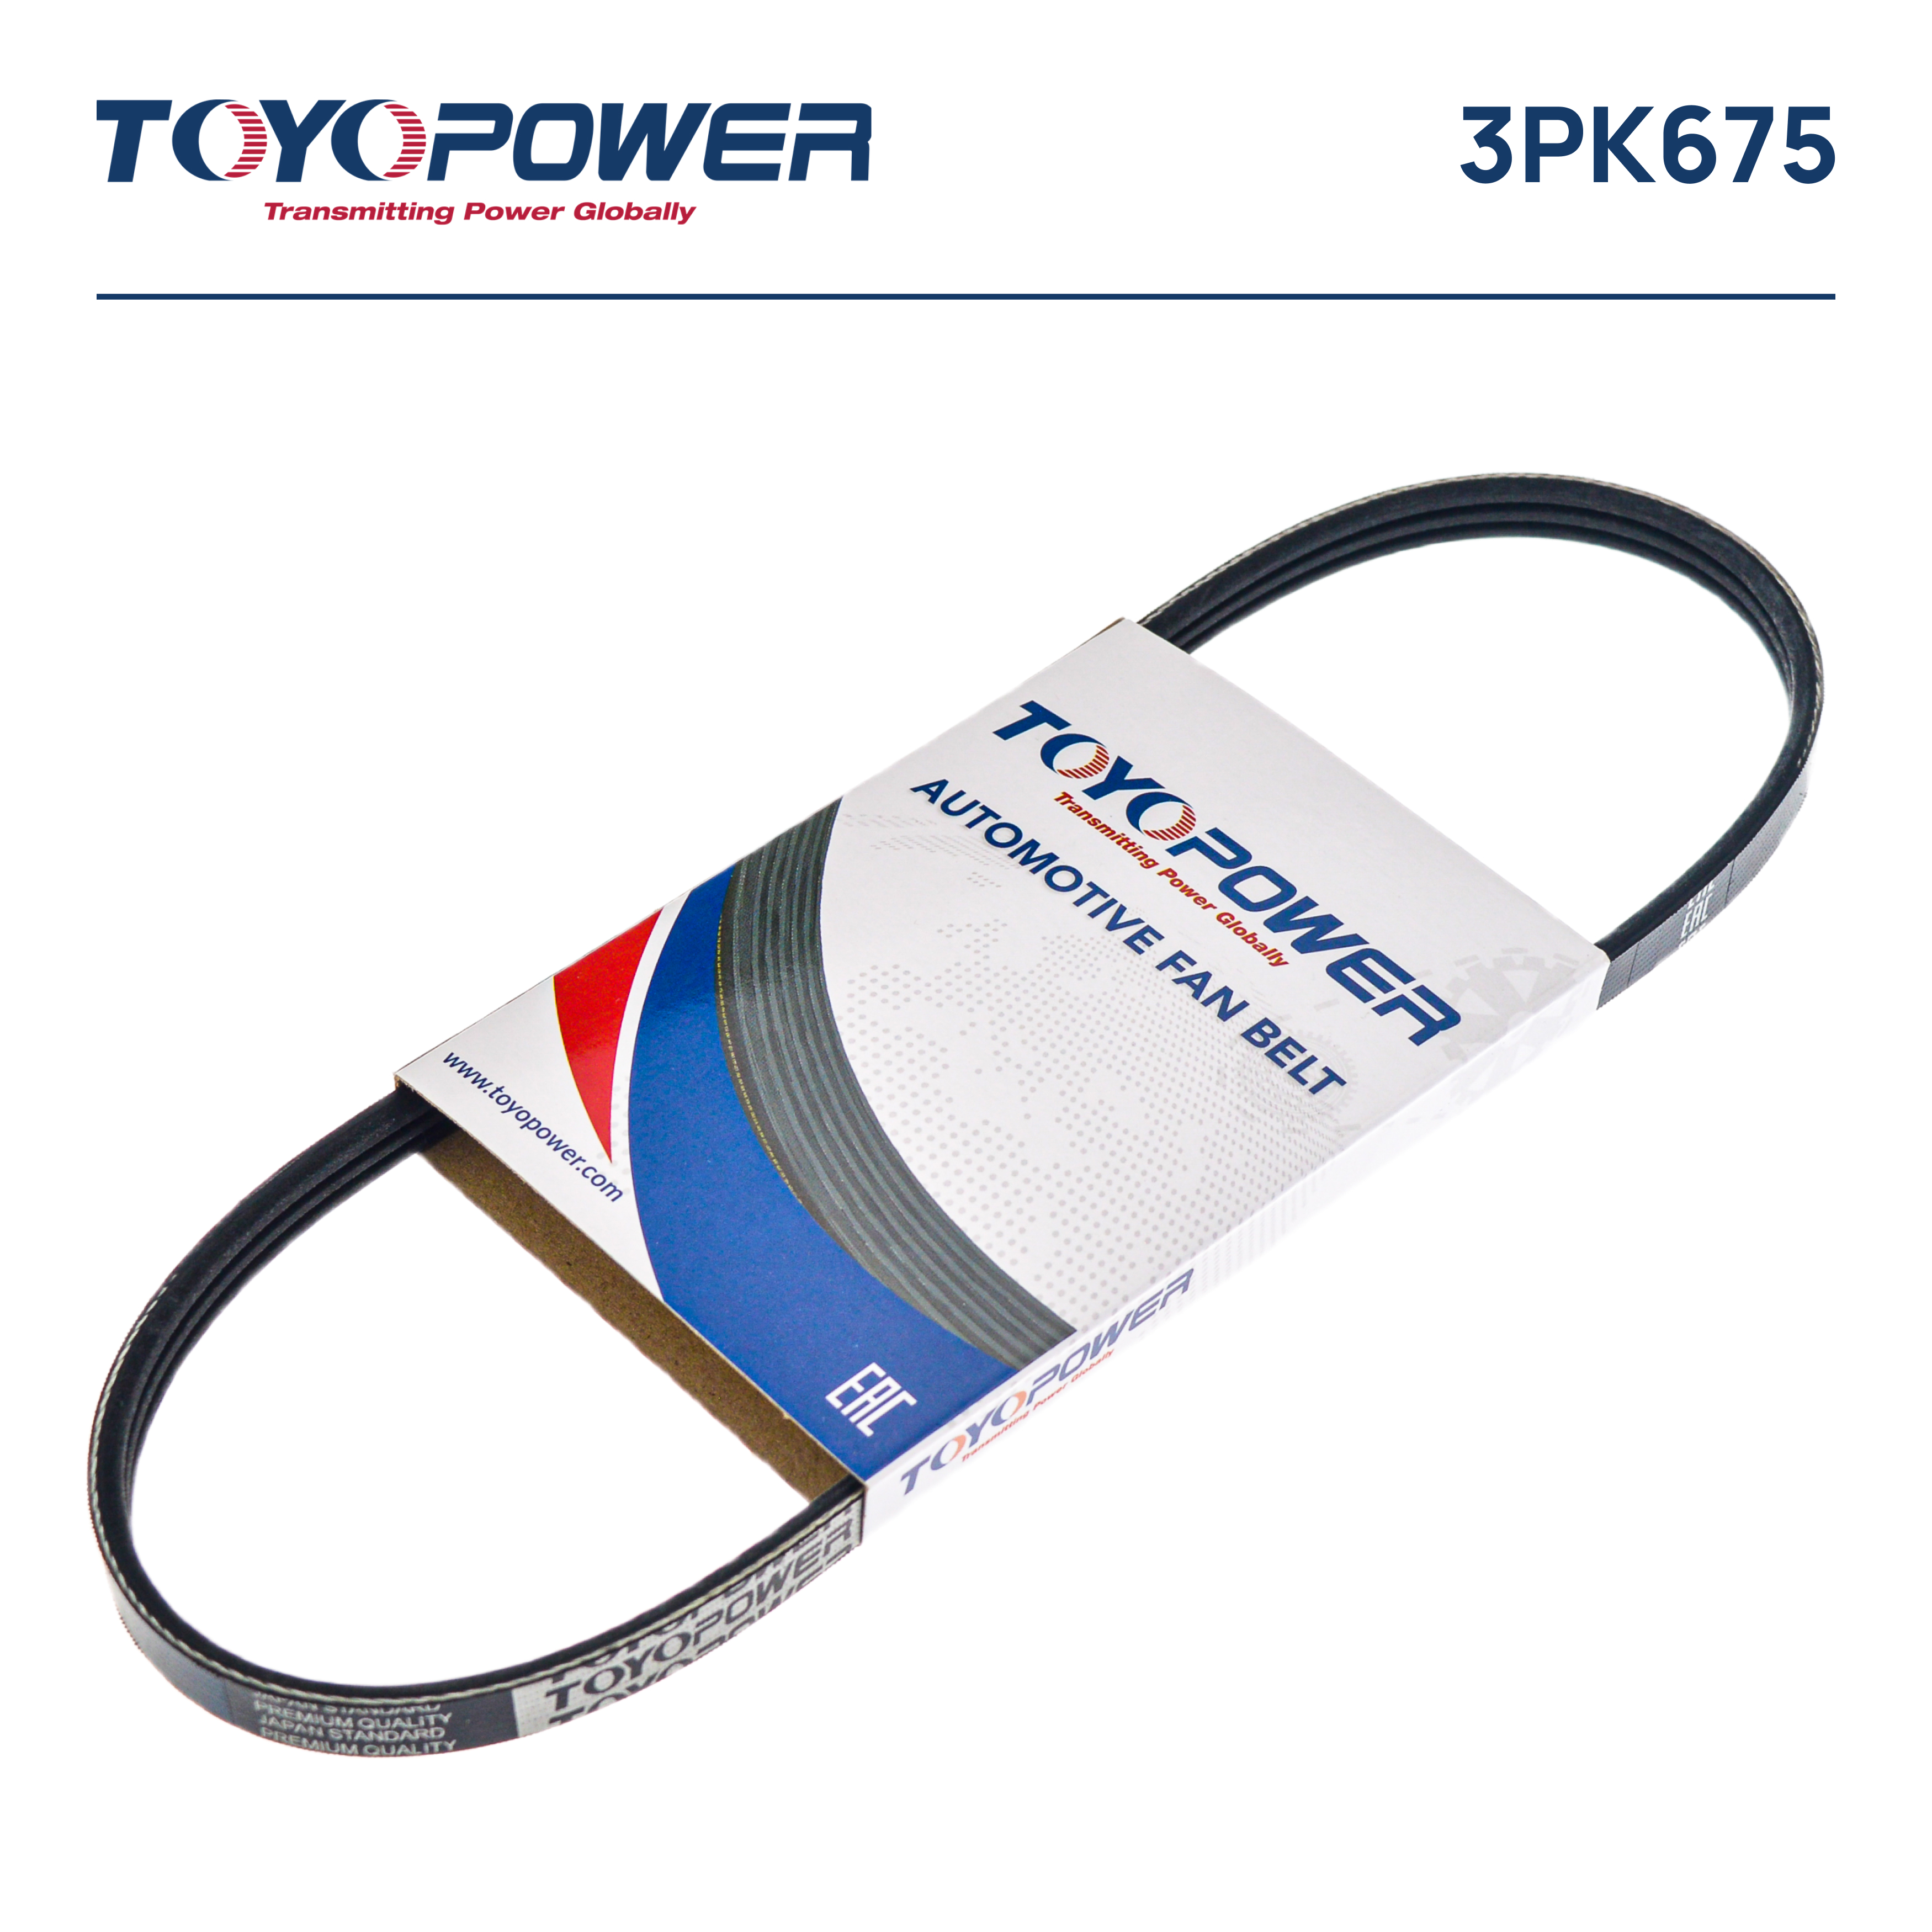 Ремень поликлиновый - Toyopower 3PK675